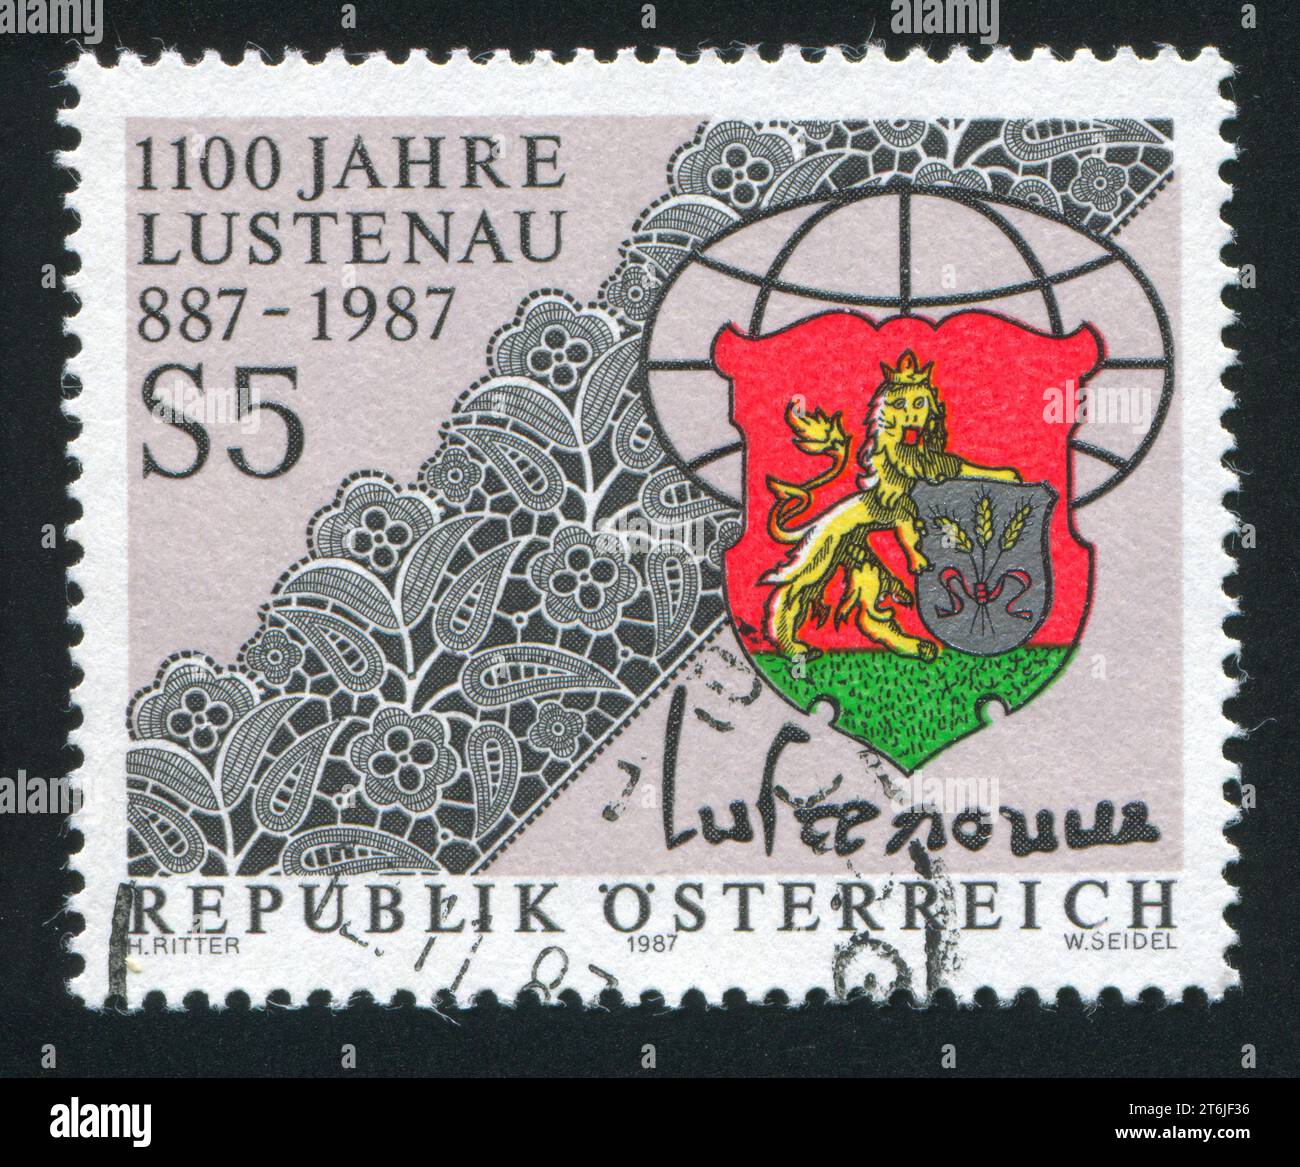 AUTRICHE - CIRCA 1987 : timbre imprimé par l'Autriche, montre dentelle, armes municipales de Lustenau, circa 1987 Banque D'Images